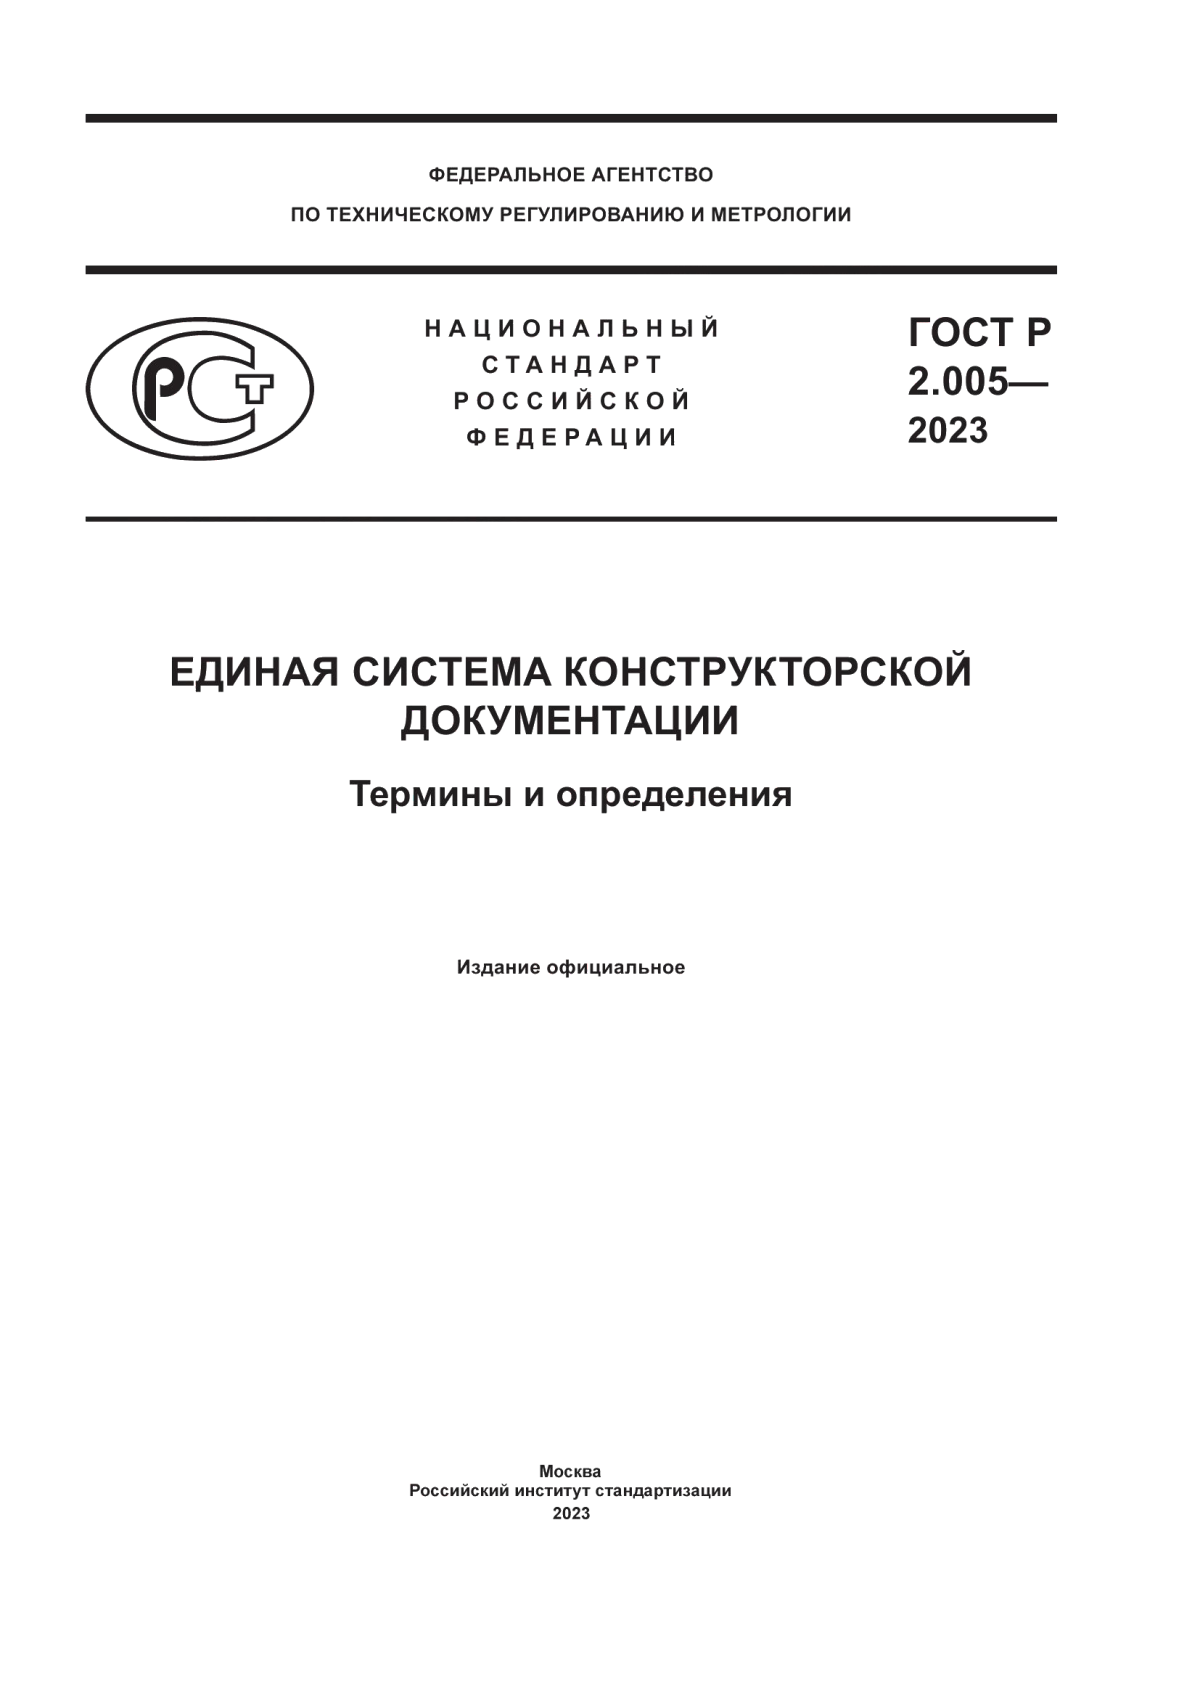 ГОСТ Р 2.005-2023 Единая система конструкторской документации. Термины и определения